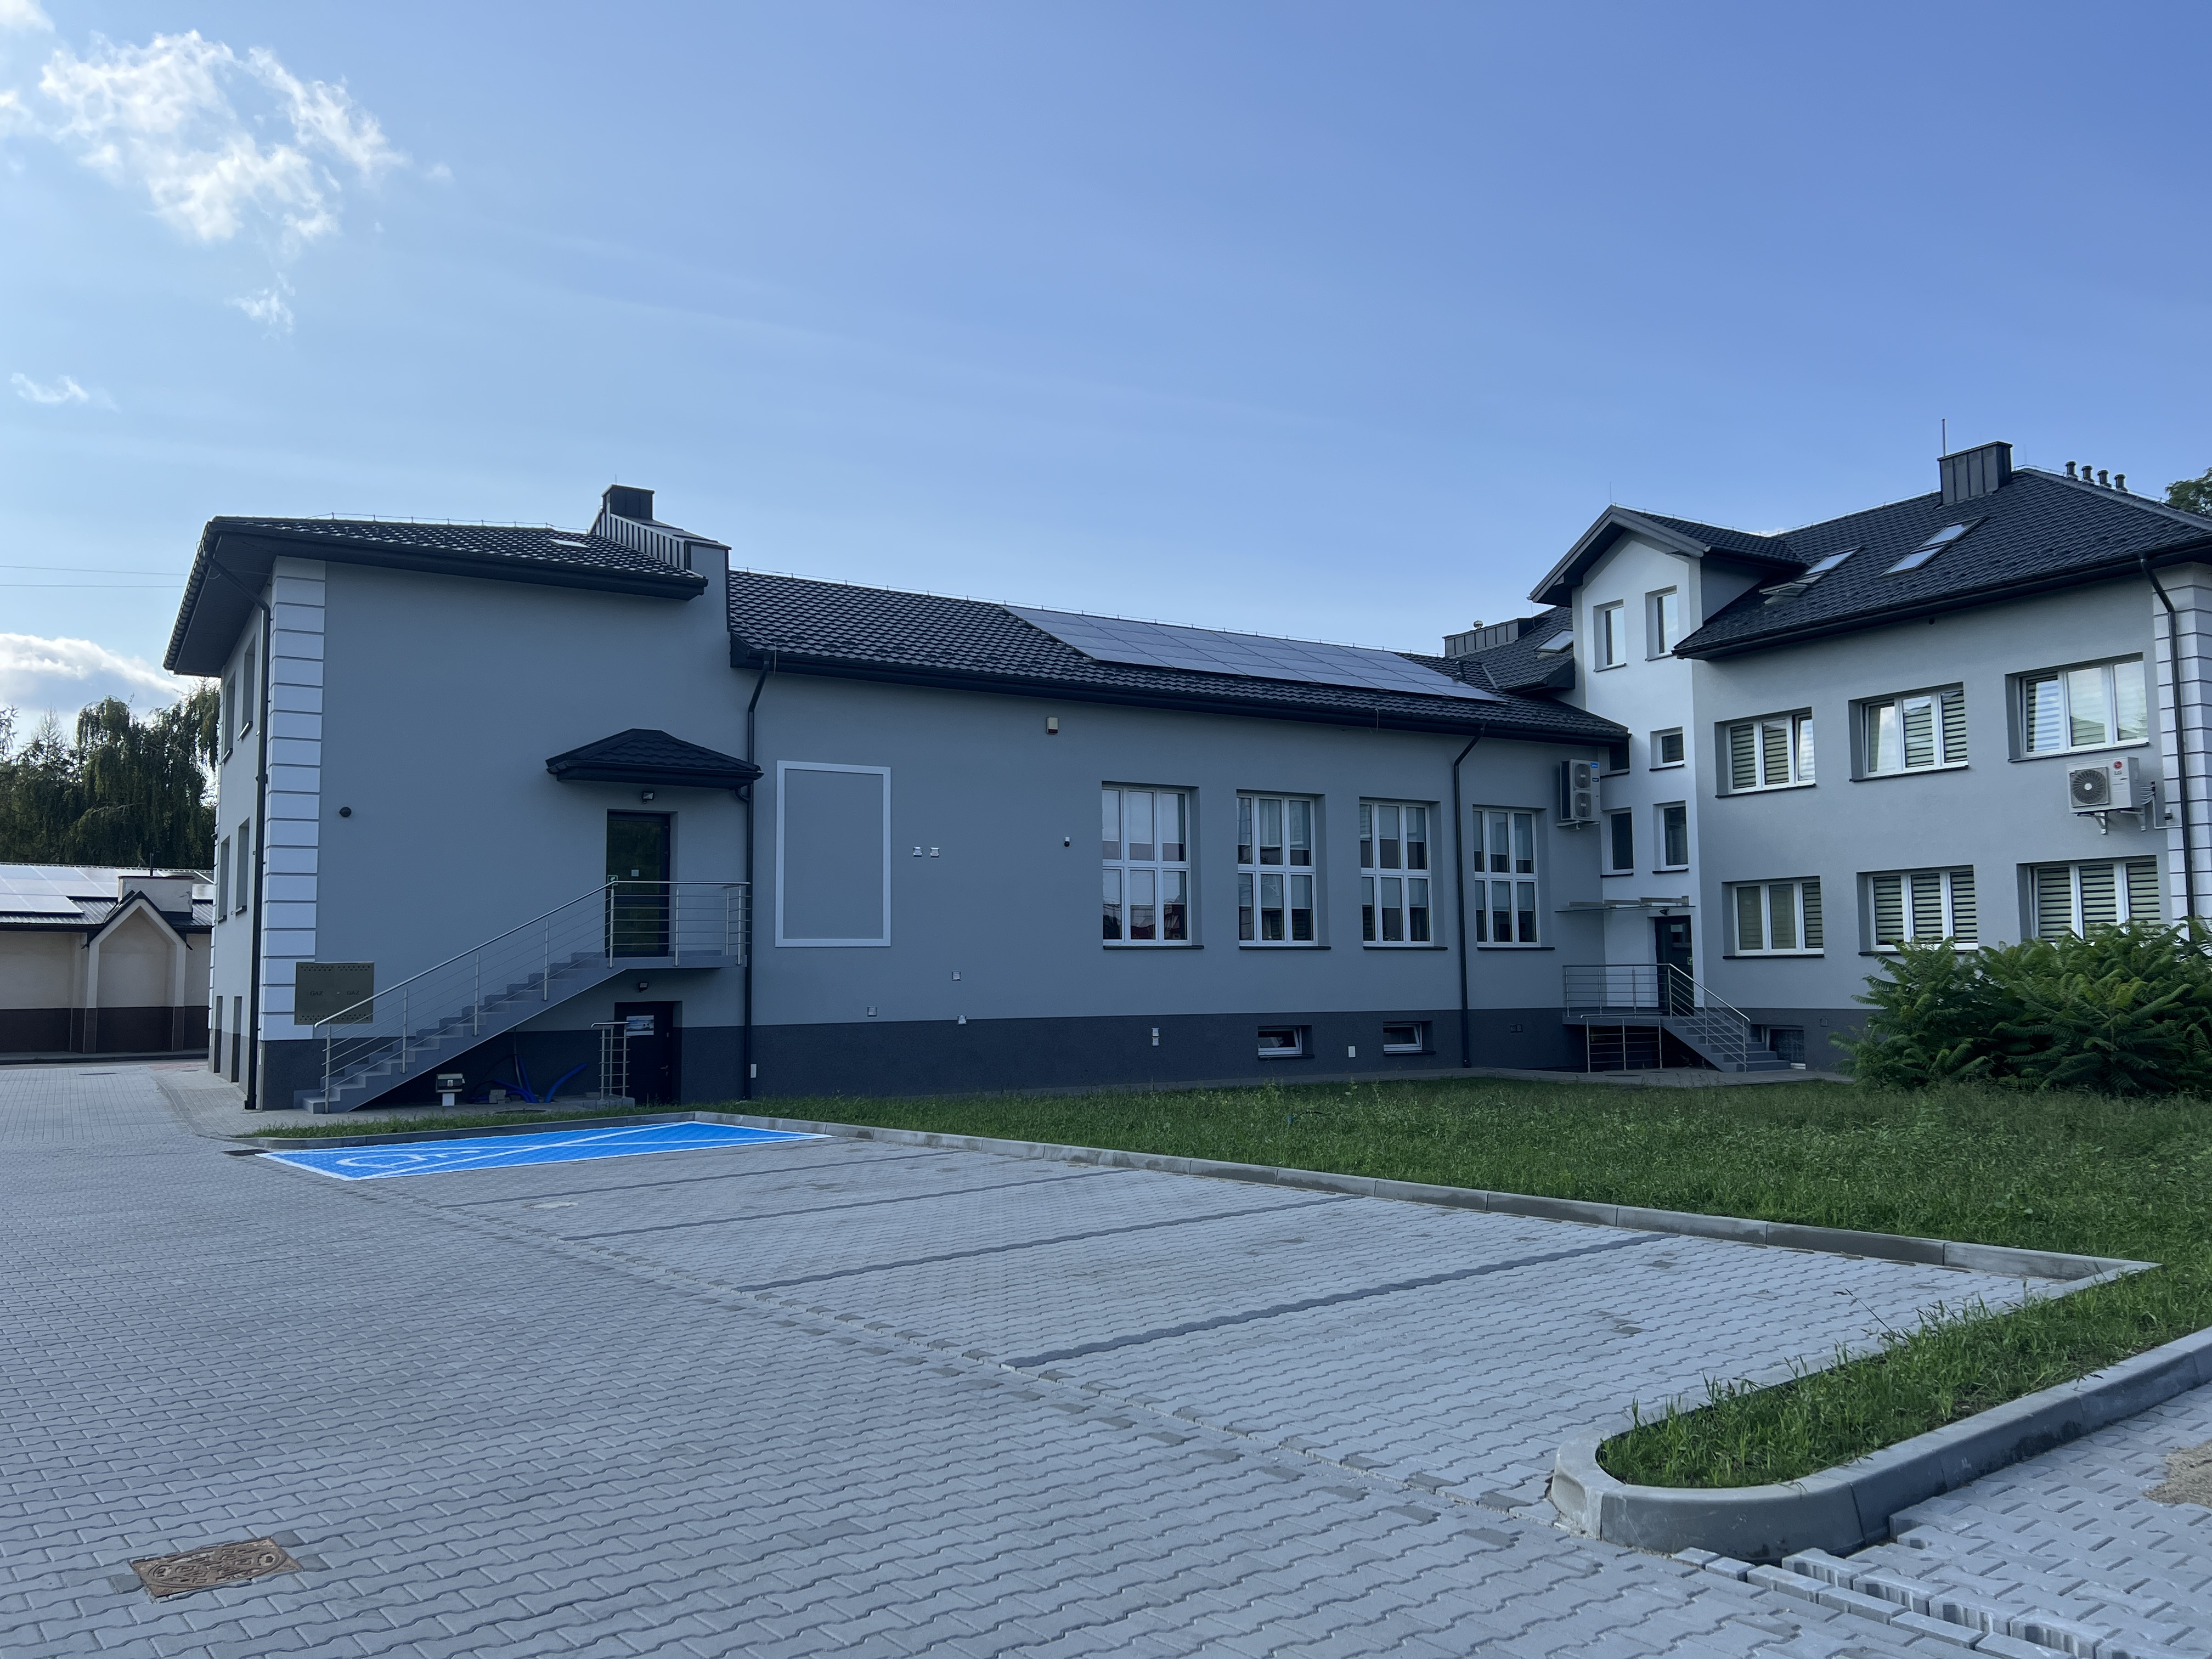 zdjęcie przedstawia fragment parkingu zbudowanego z kostki brukowej znajdującego się za budynkiem Urzędu gminy w Wietrzychowicach